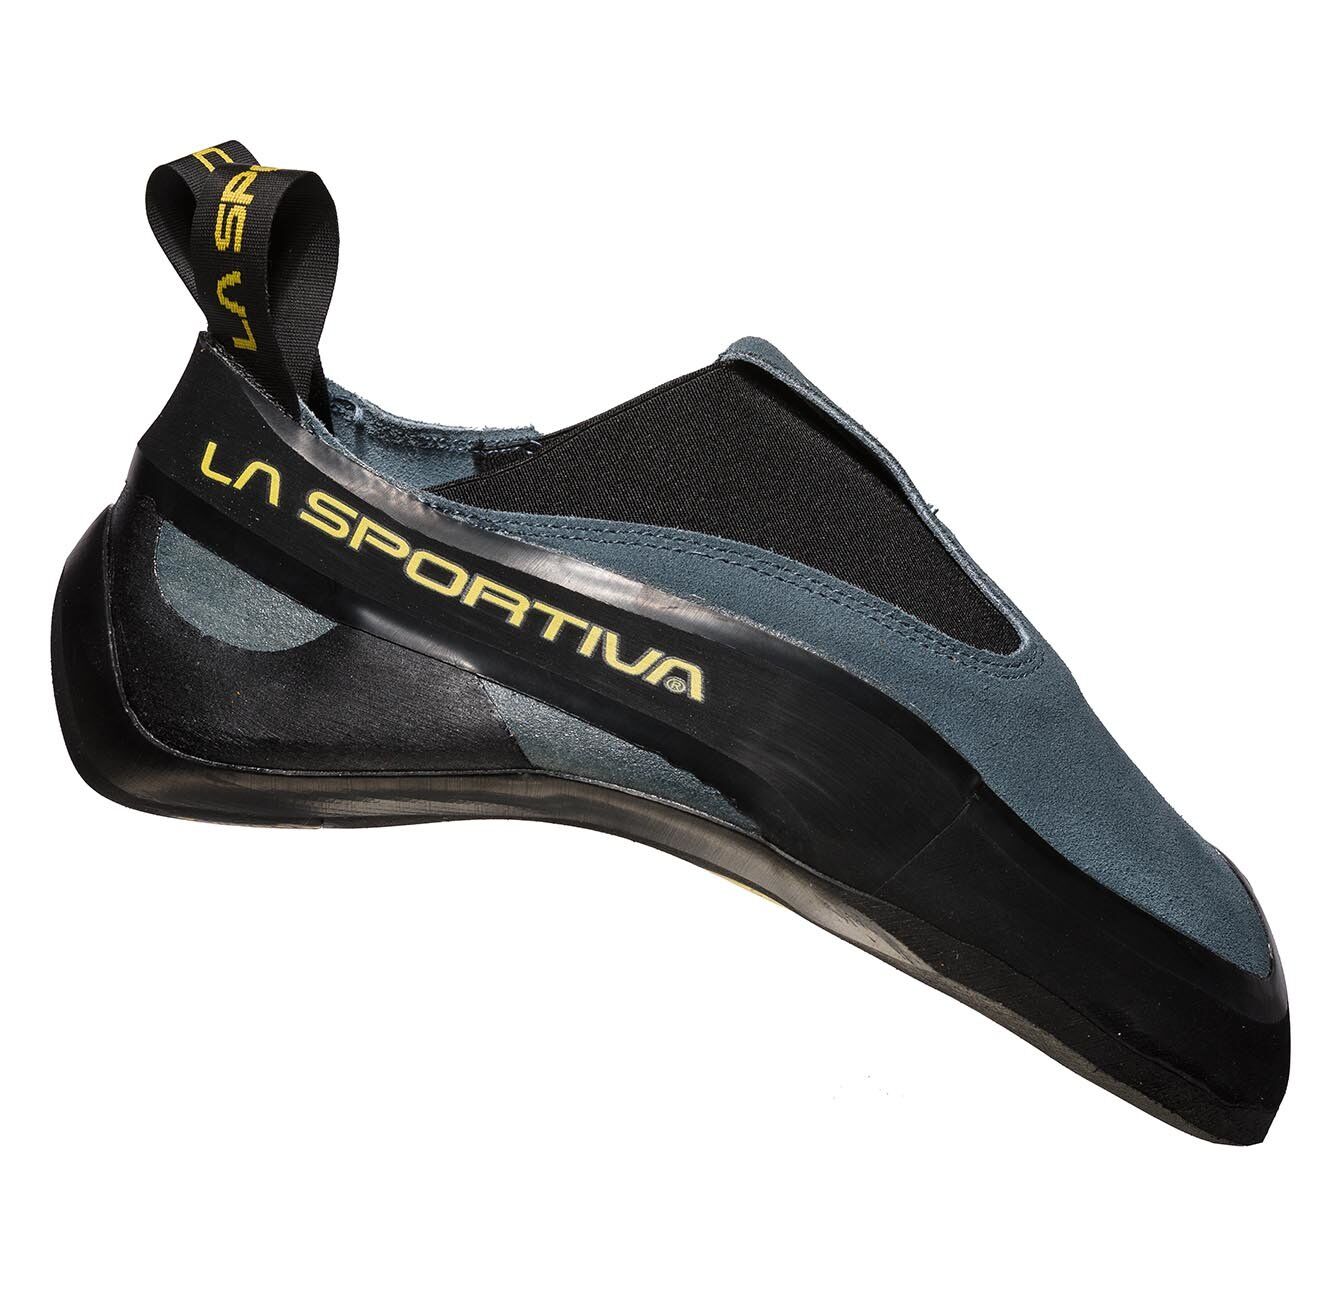 La Sportiva - Cobra - Climbing shoes